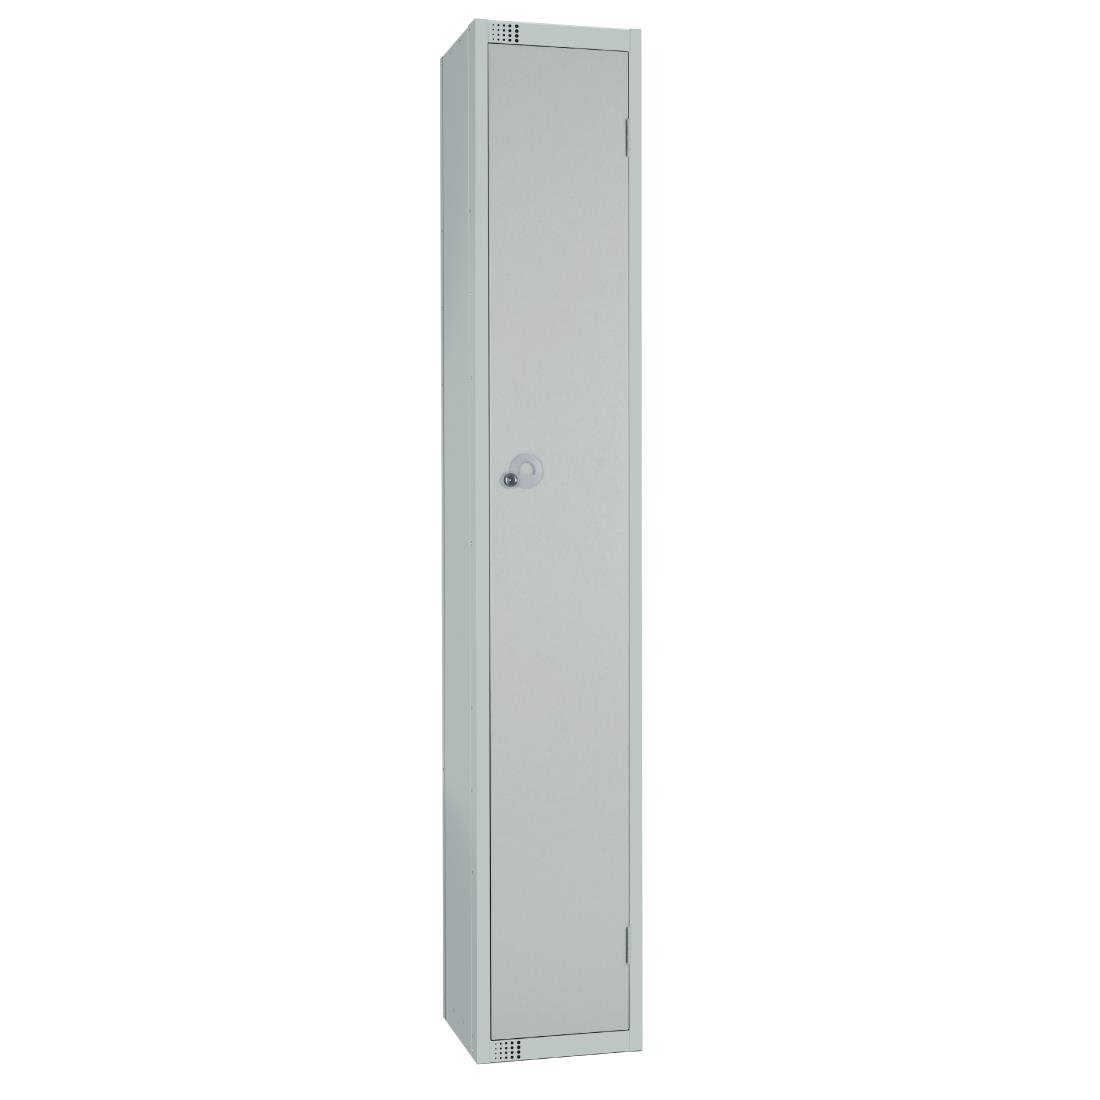 W929-ELS Elite Single Door Electronic Combination Locker with Sloping Top Grey